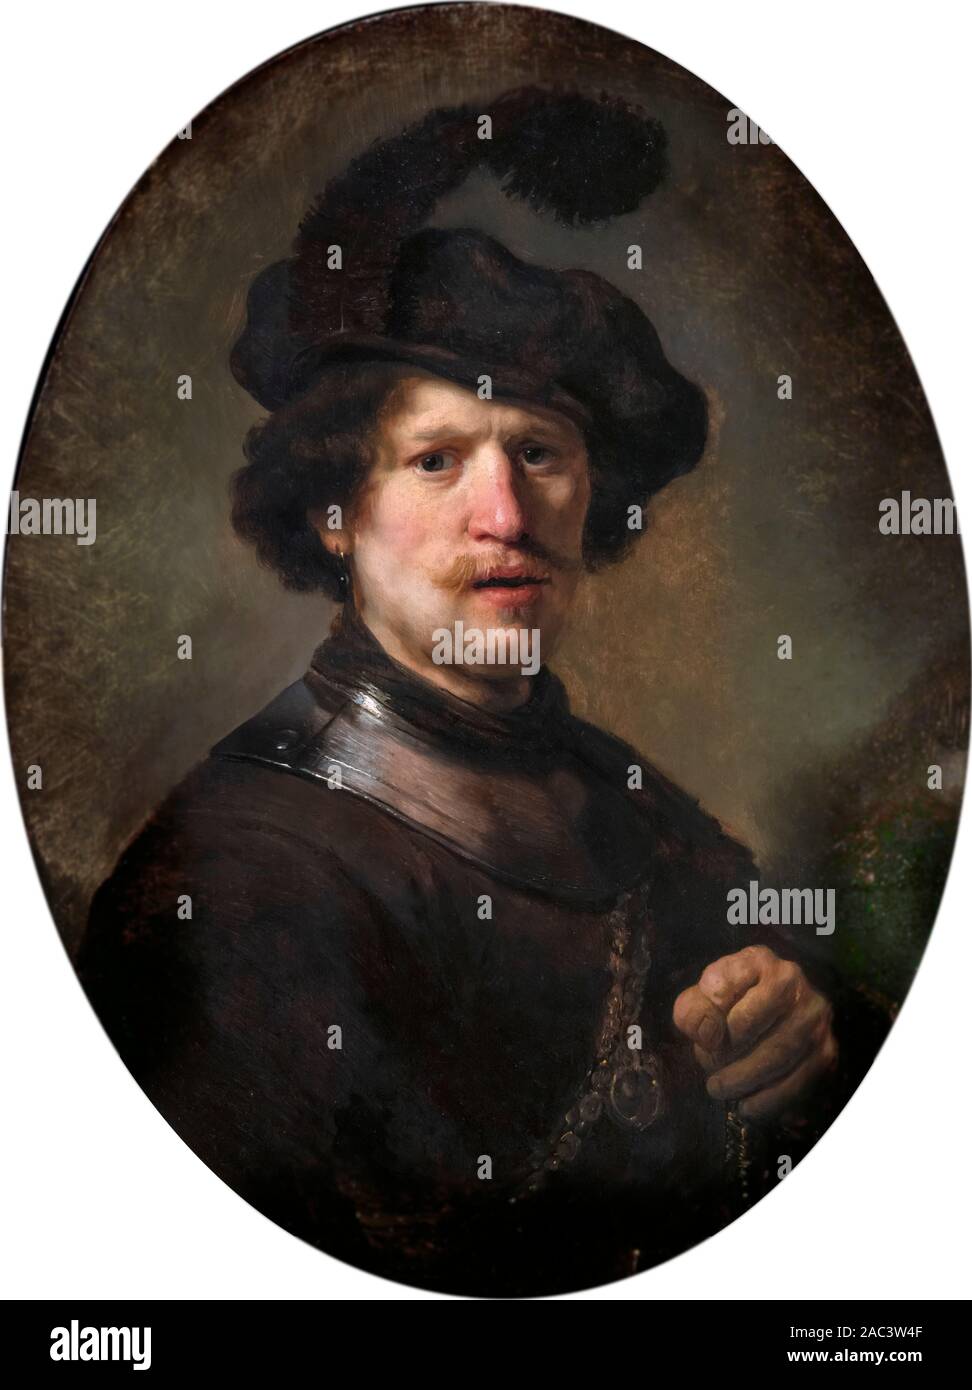 Mann mit einem gefiederten Baskenmütze und Gorget von der Werkstatt von Rembrandt van Rijn (1606-1669), Öl auf Eichenholz, Mitte der 1630er Jahren. Dieses Portrait wurde von Rembrandts Schüler gestrichen und der Sitter ist Rembrandt selbst. Stockfoto